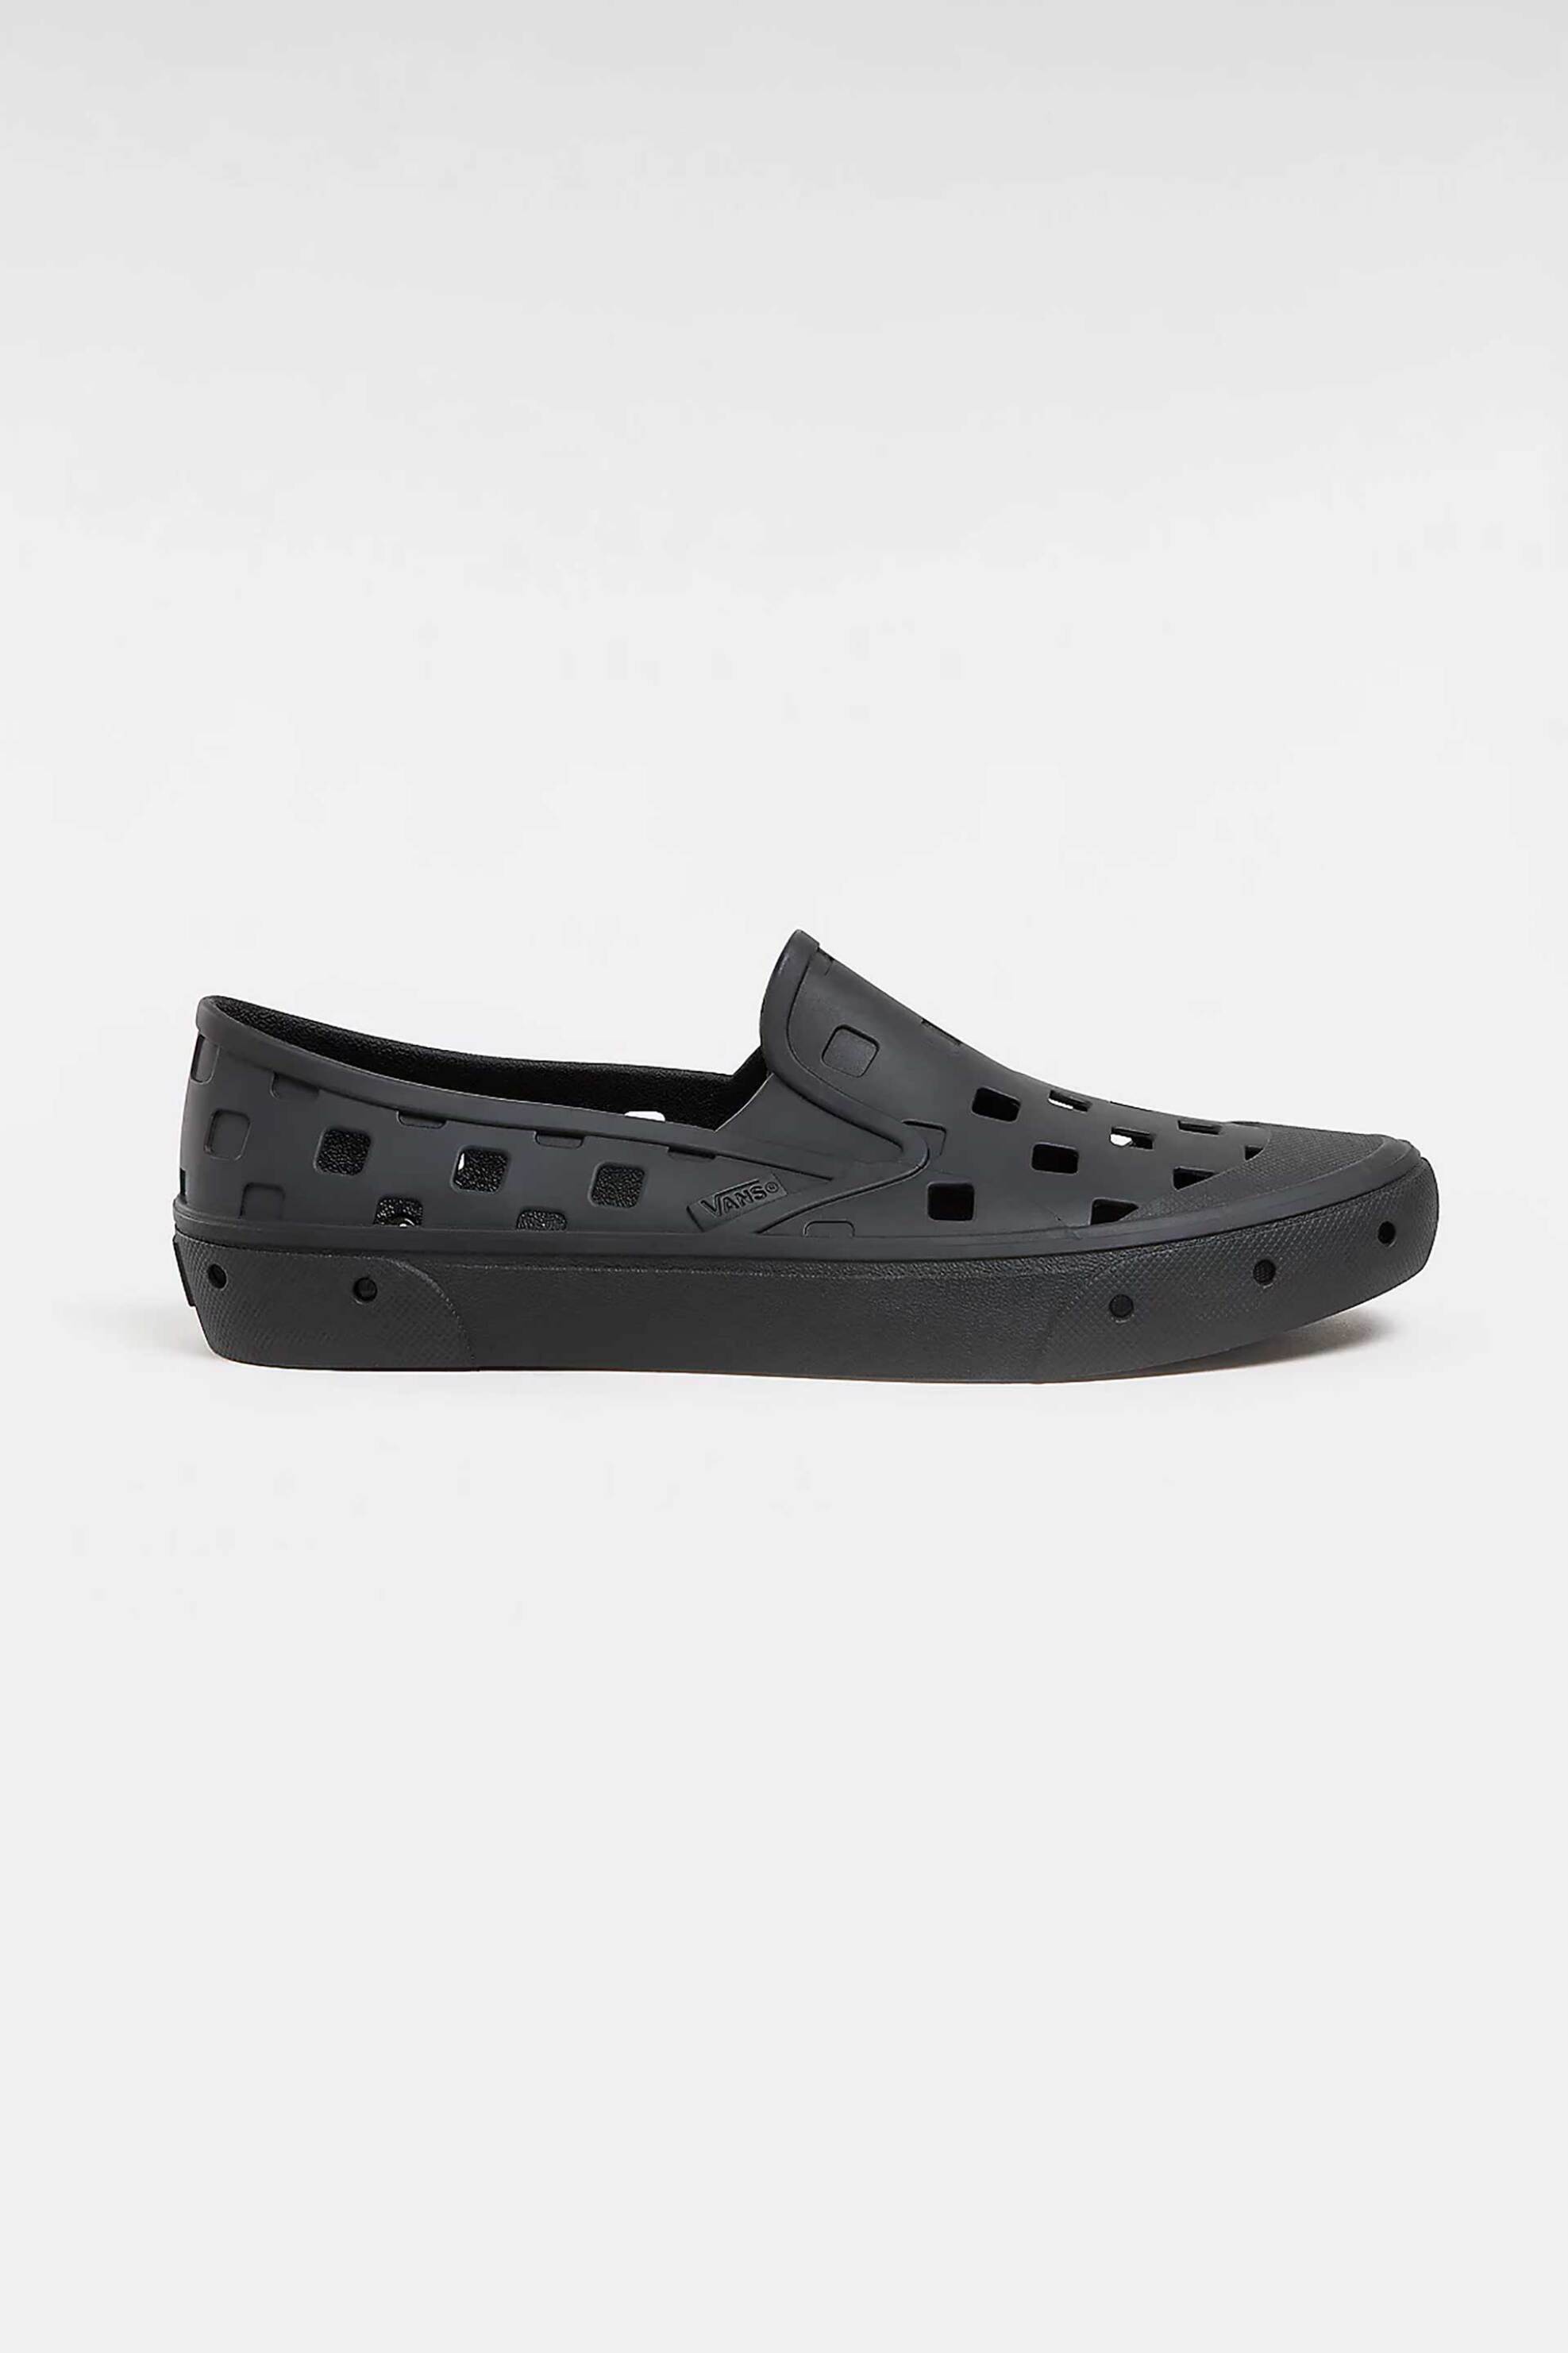 Ανδρική Μόδα > Ανδρικά Παπούτσια > Slip-on Vans unisex slip-on πλαστικά sneakers με διάτρητο checked pattern "Slip-on Trk" - VN0A5HF8BLK1 Μαύρο